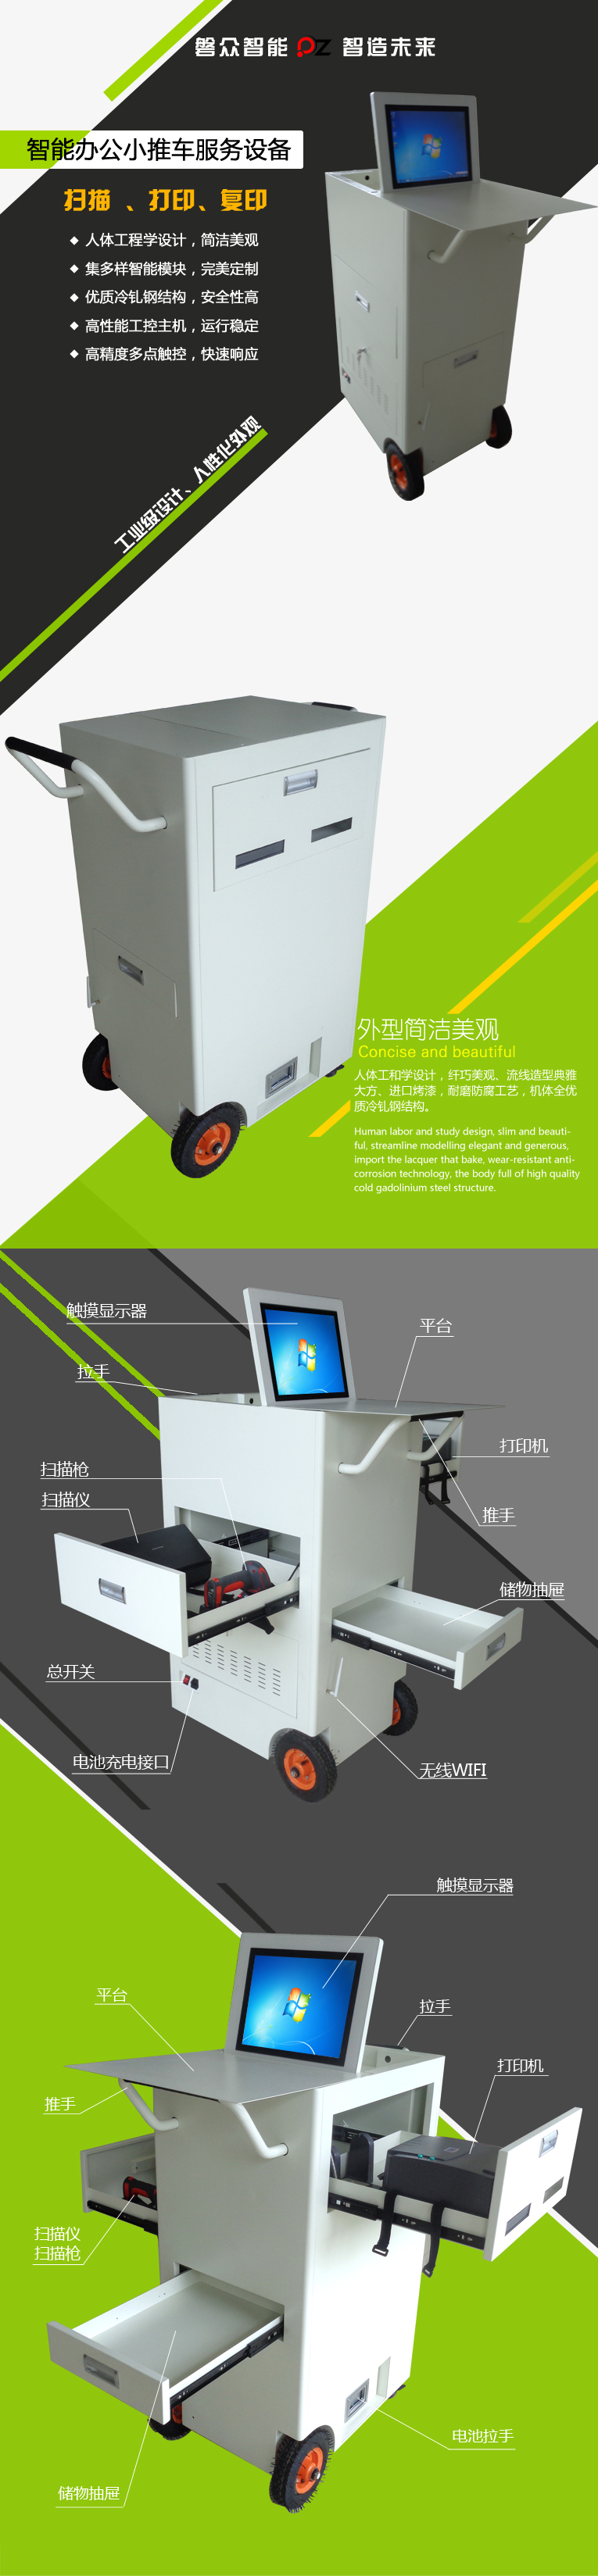 智能小推车服务设备、自助复印机、智能打印机、多点触控自助服务终端-广州磐众智能科技有限公司